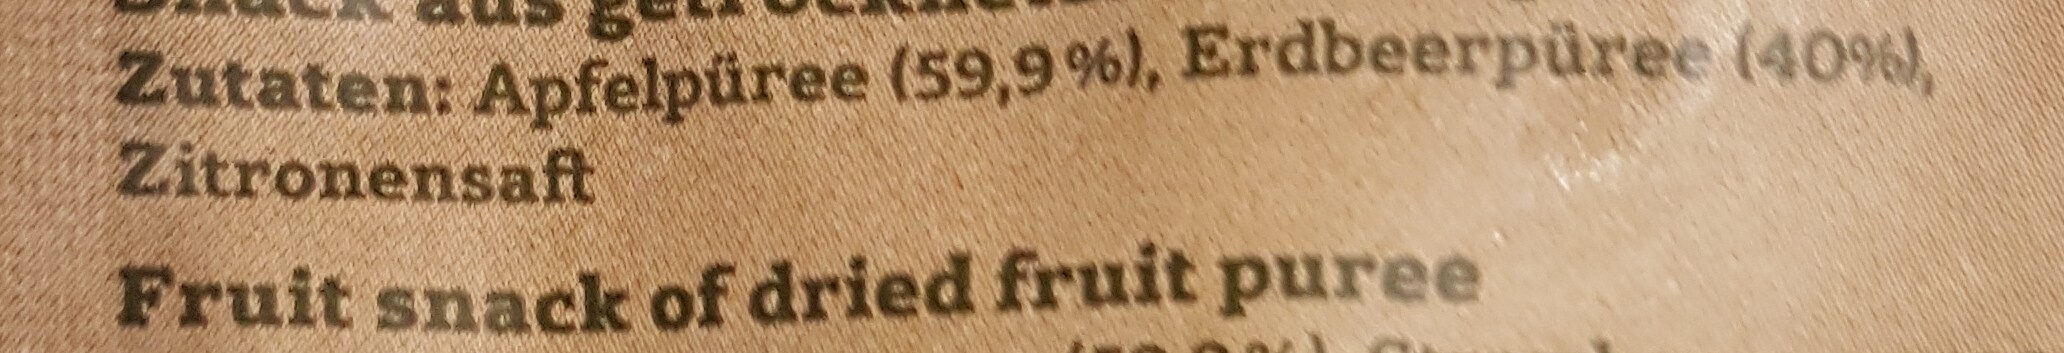 Frucht papier - Ingredients - de